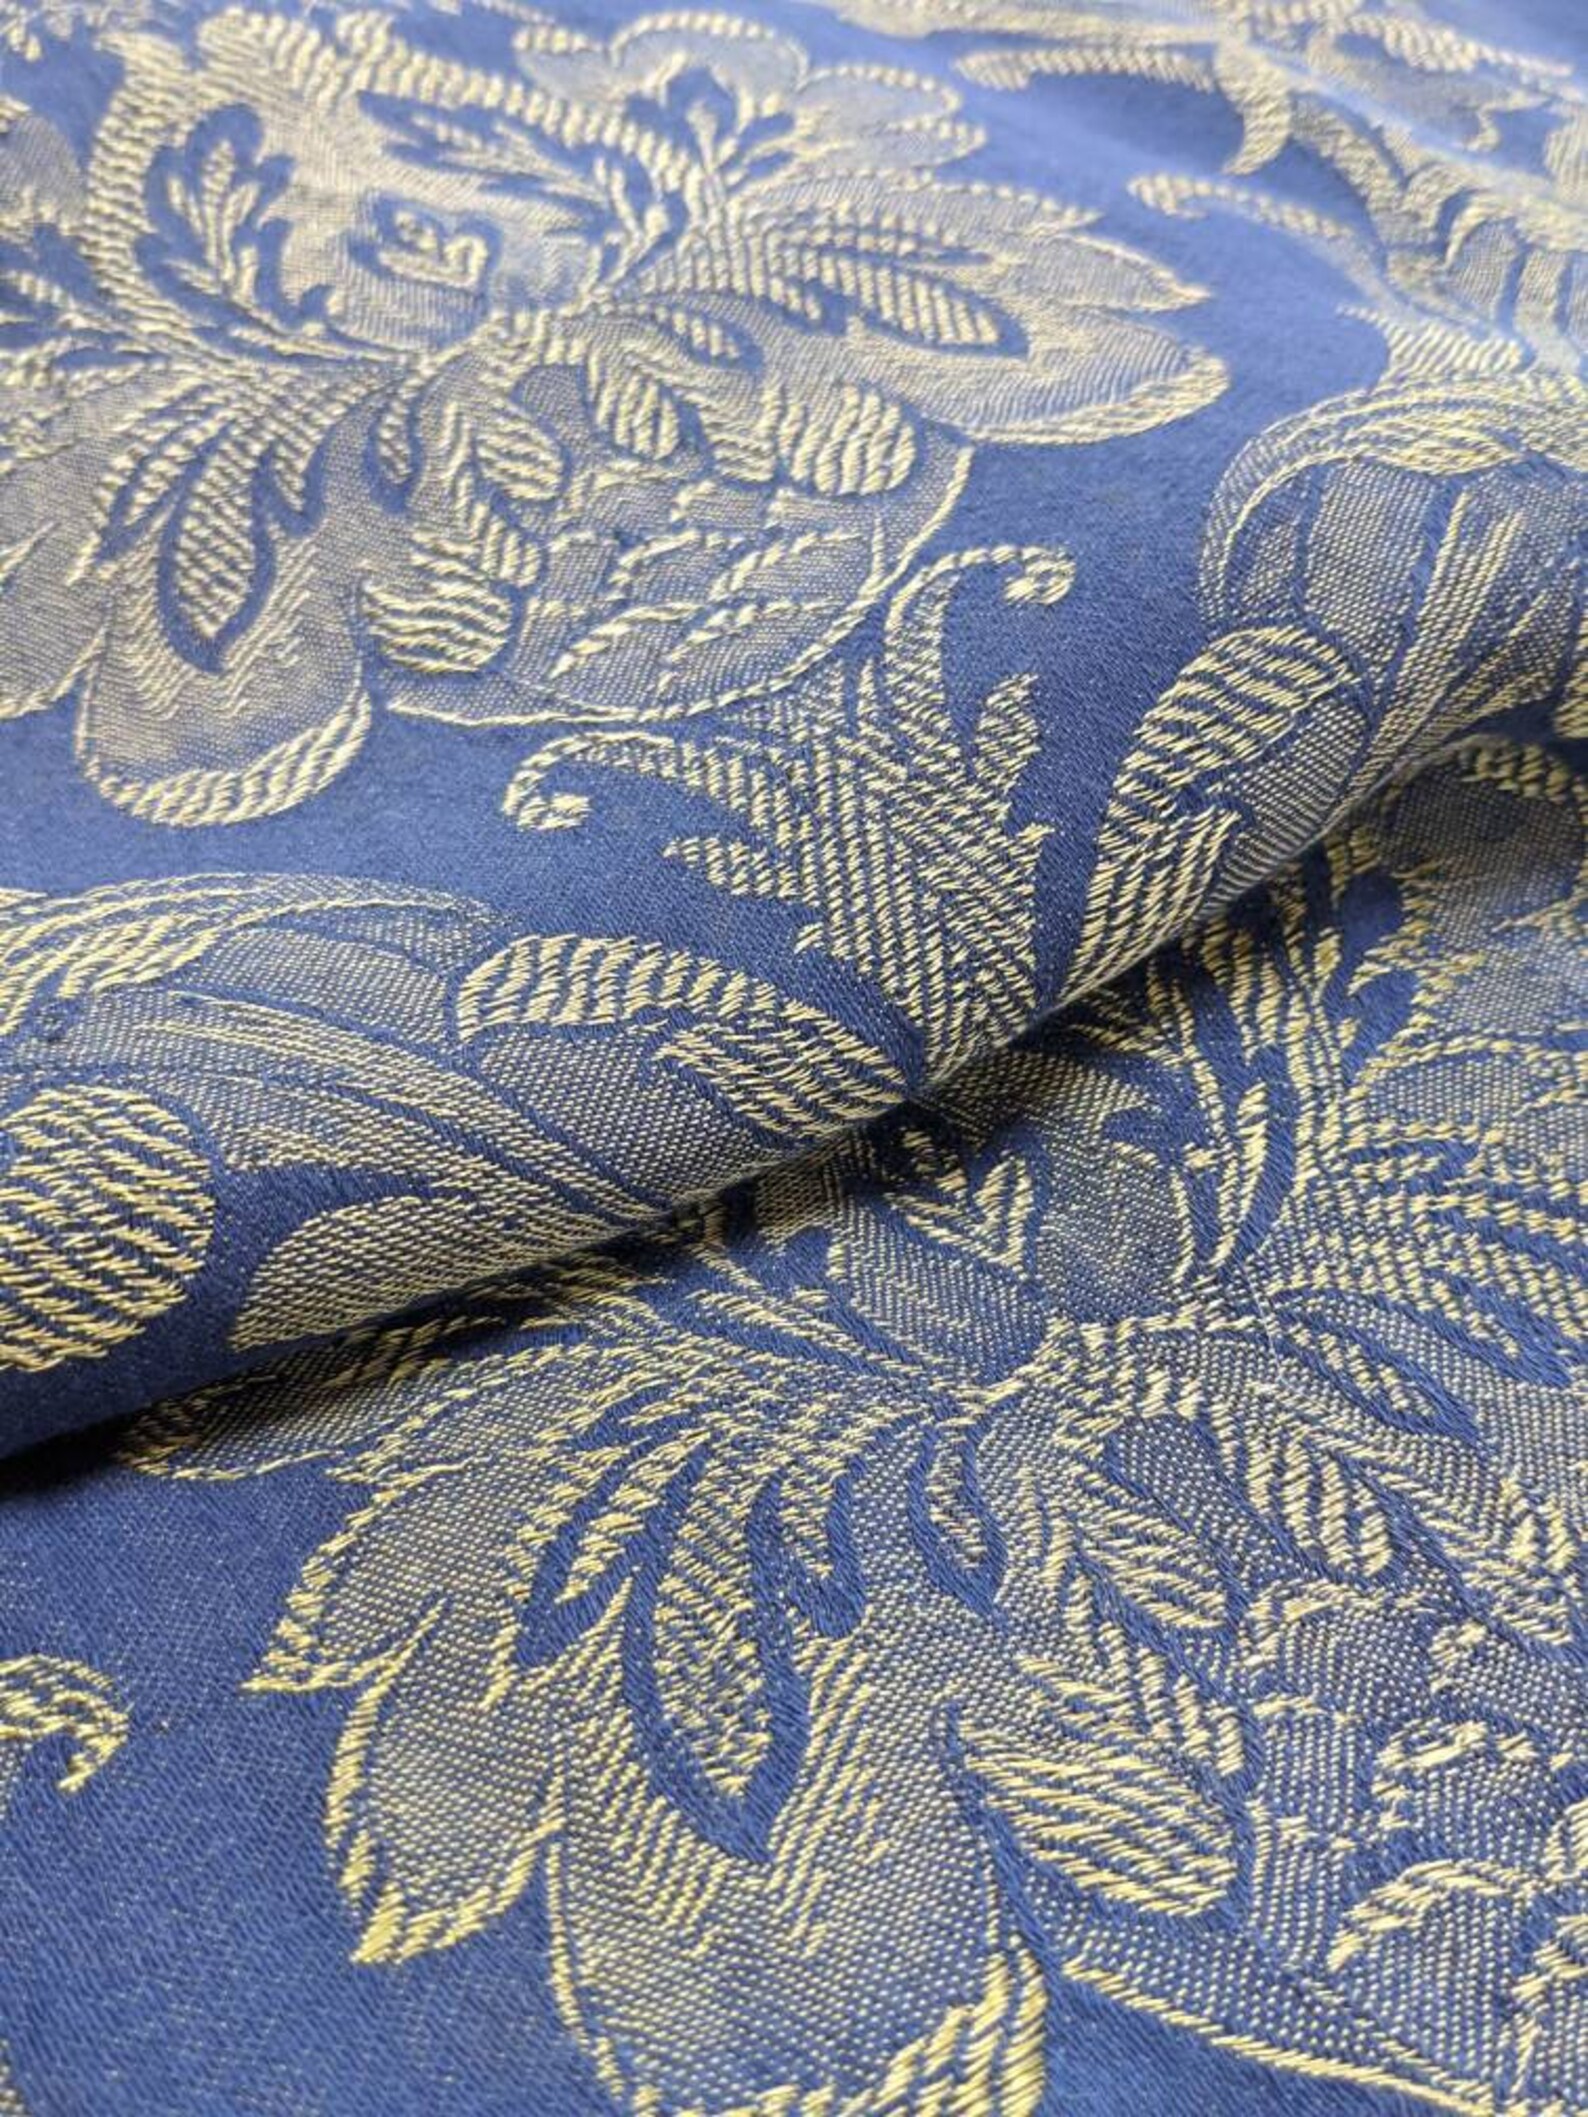 Vintage Blue Damask Fabric Curtain Panel | Etsy